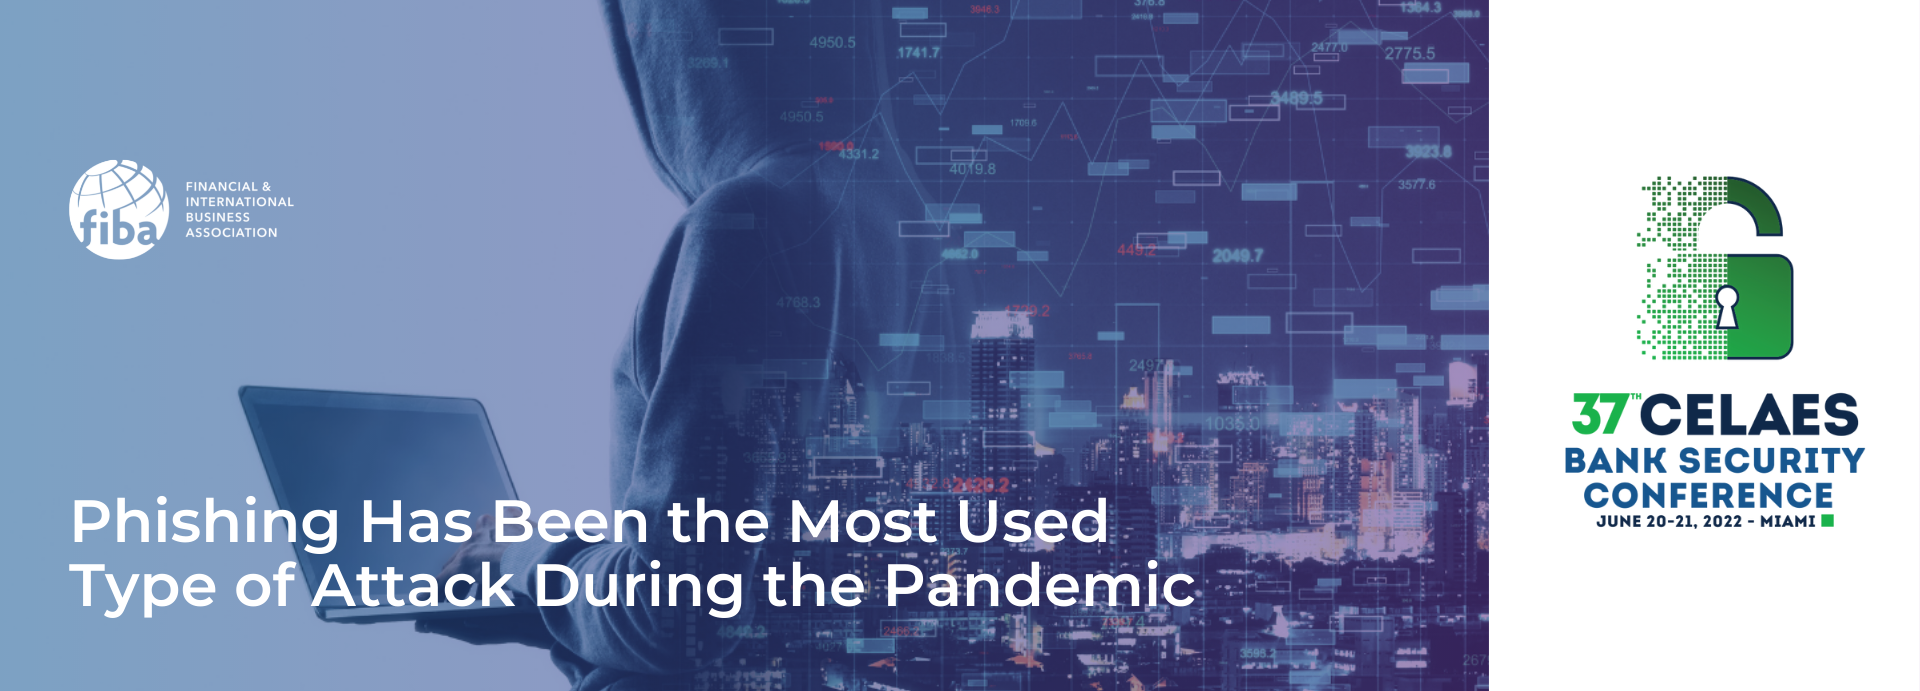 El Phishing ha sido el Tipo de Ataque Más Utilizado Durante la Pandemia